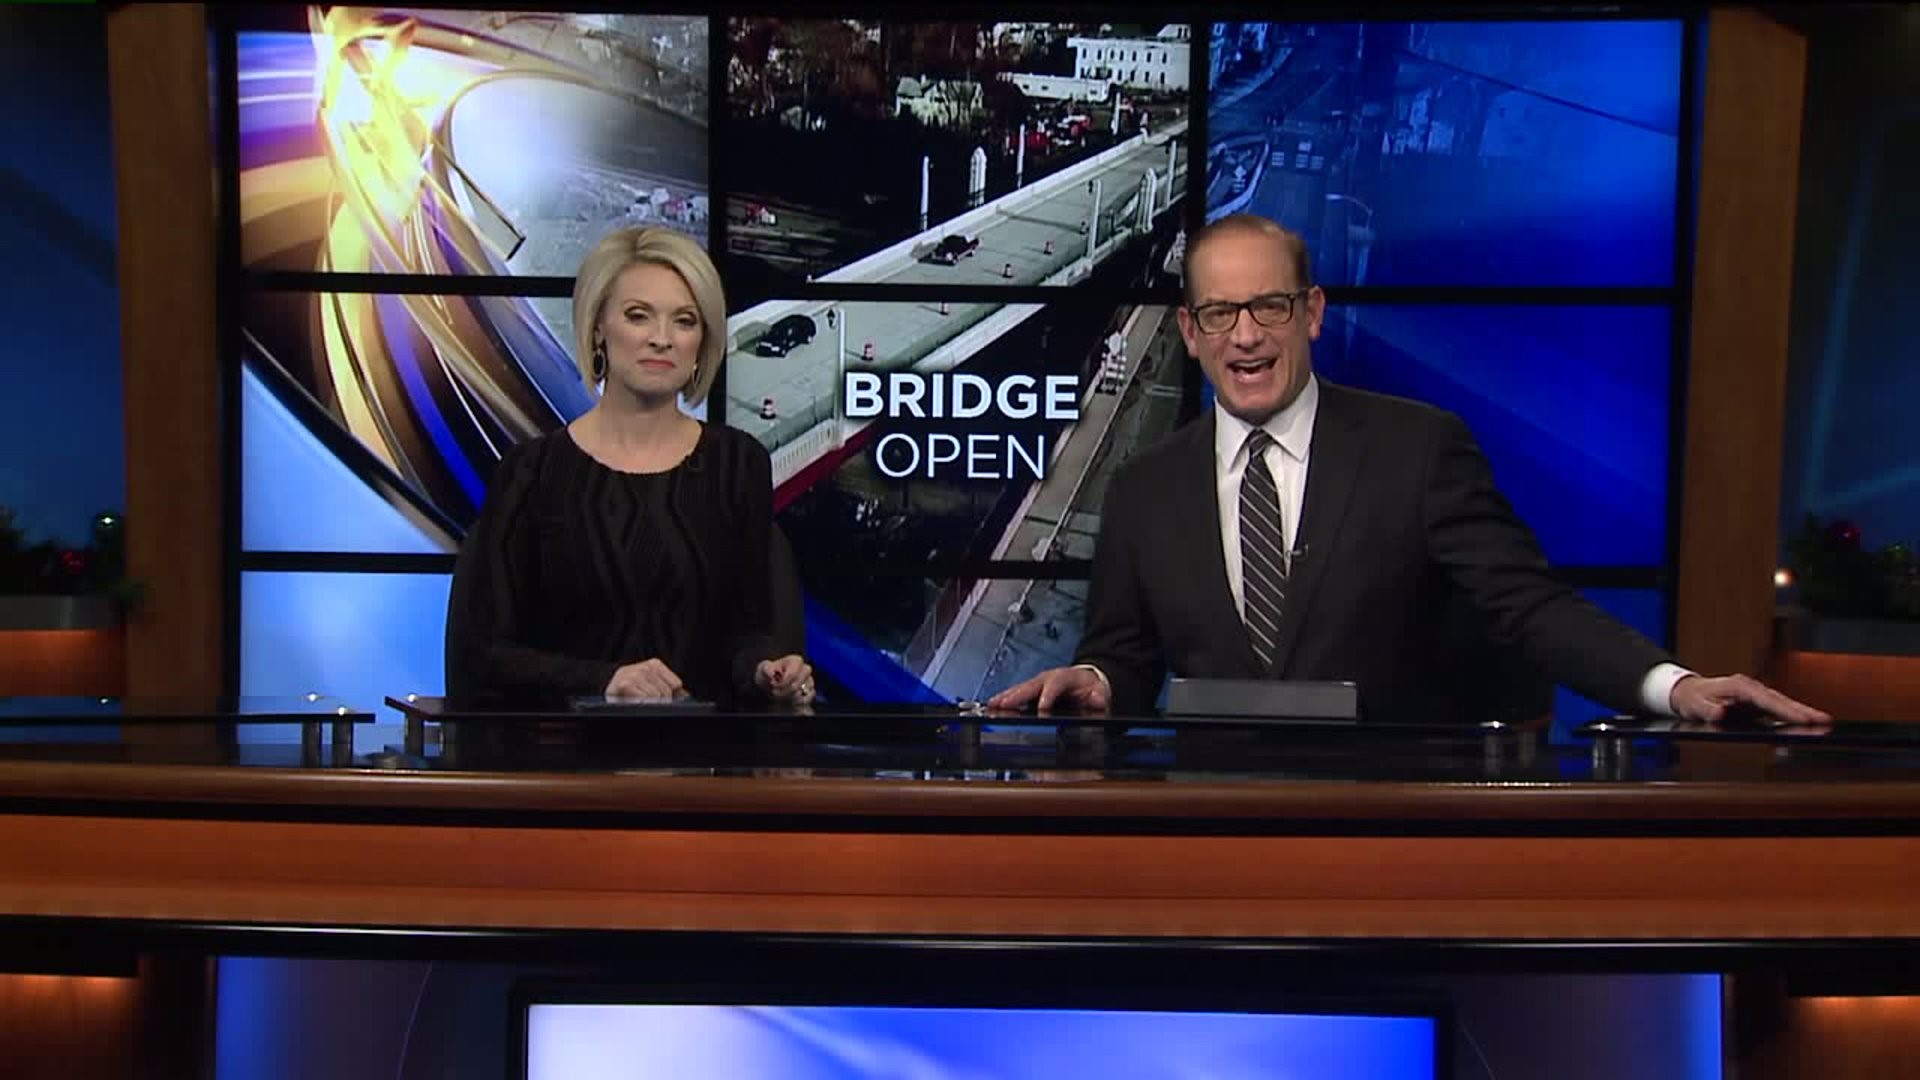 Contractor Remembered as New Bridge Opens in Scranton